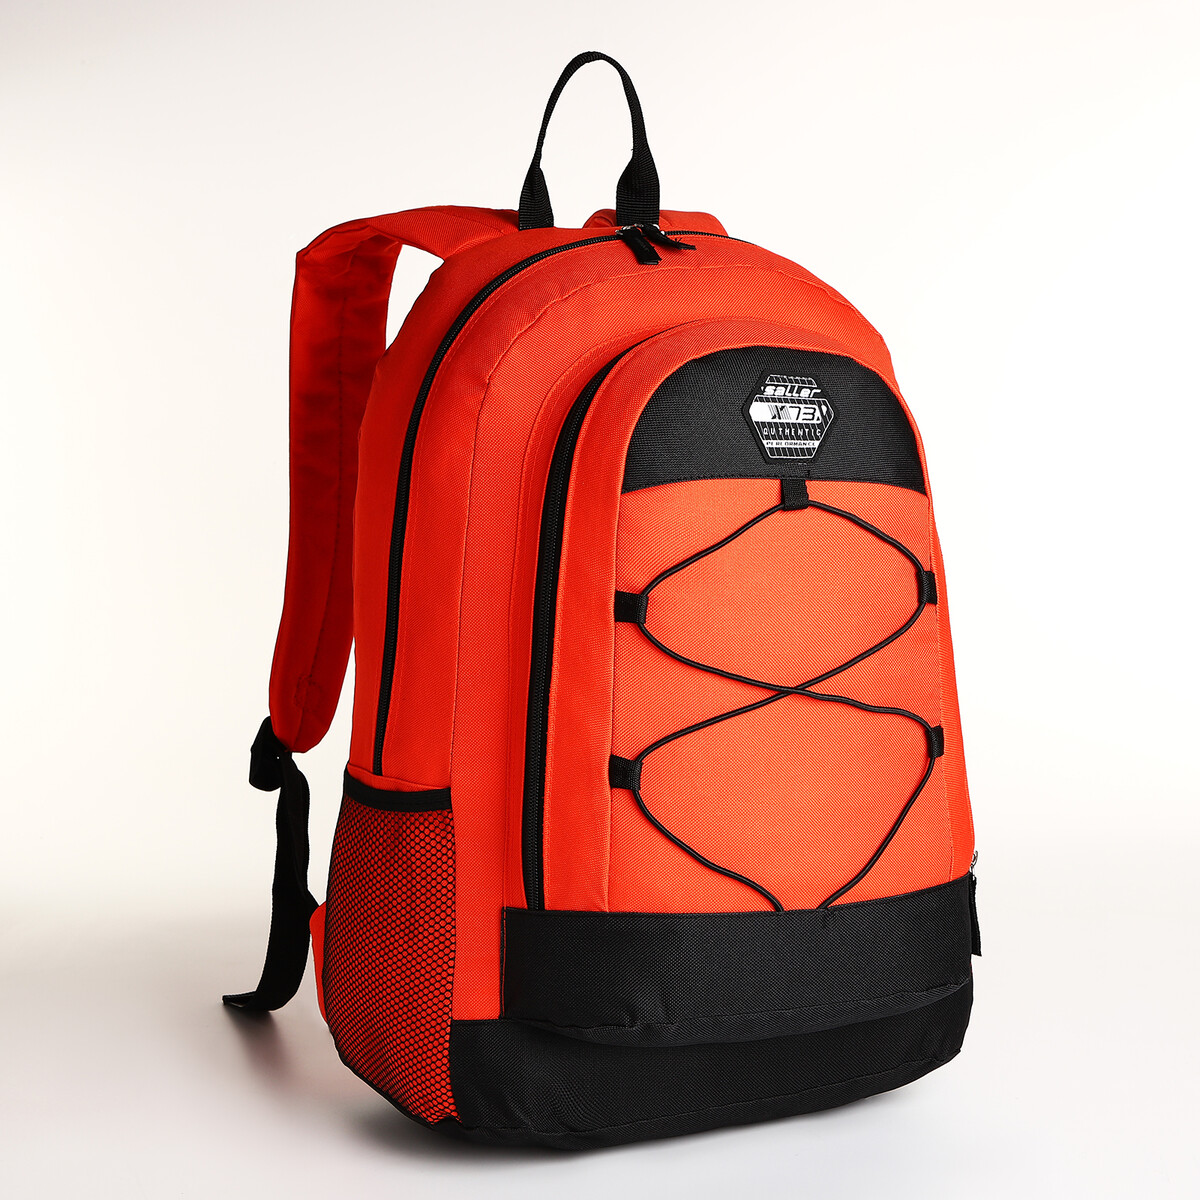 Рюкзак молодежный на молнии, 3 кармана, цвет оранжевый рюкзак молодежный из текстиля на молнии 4 кармана оранжевый